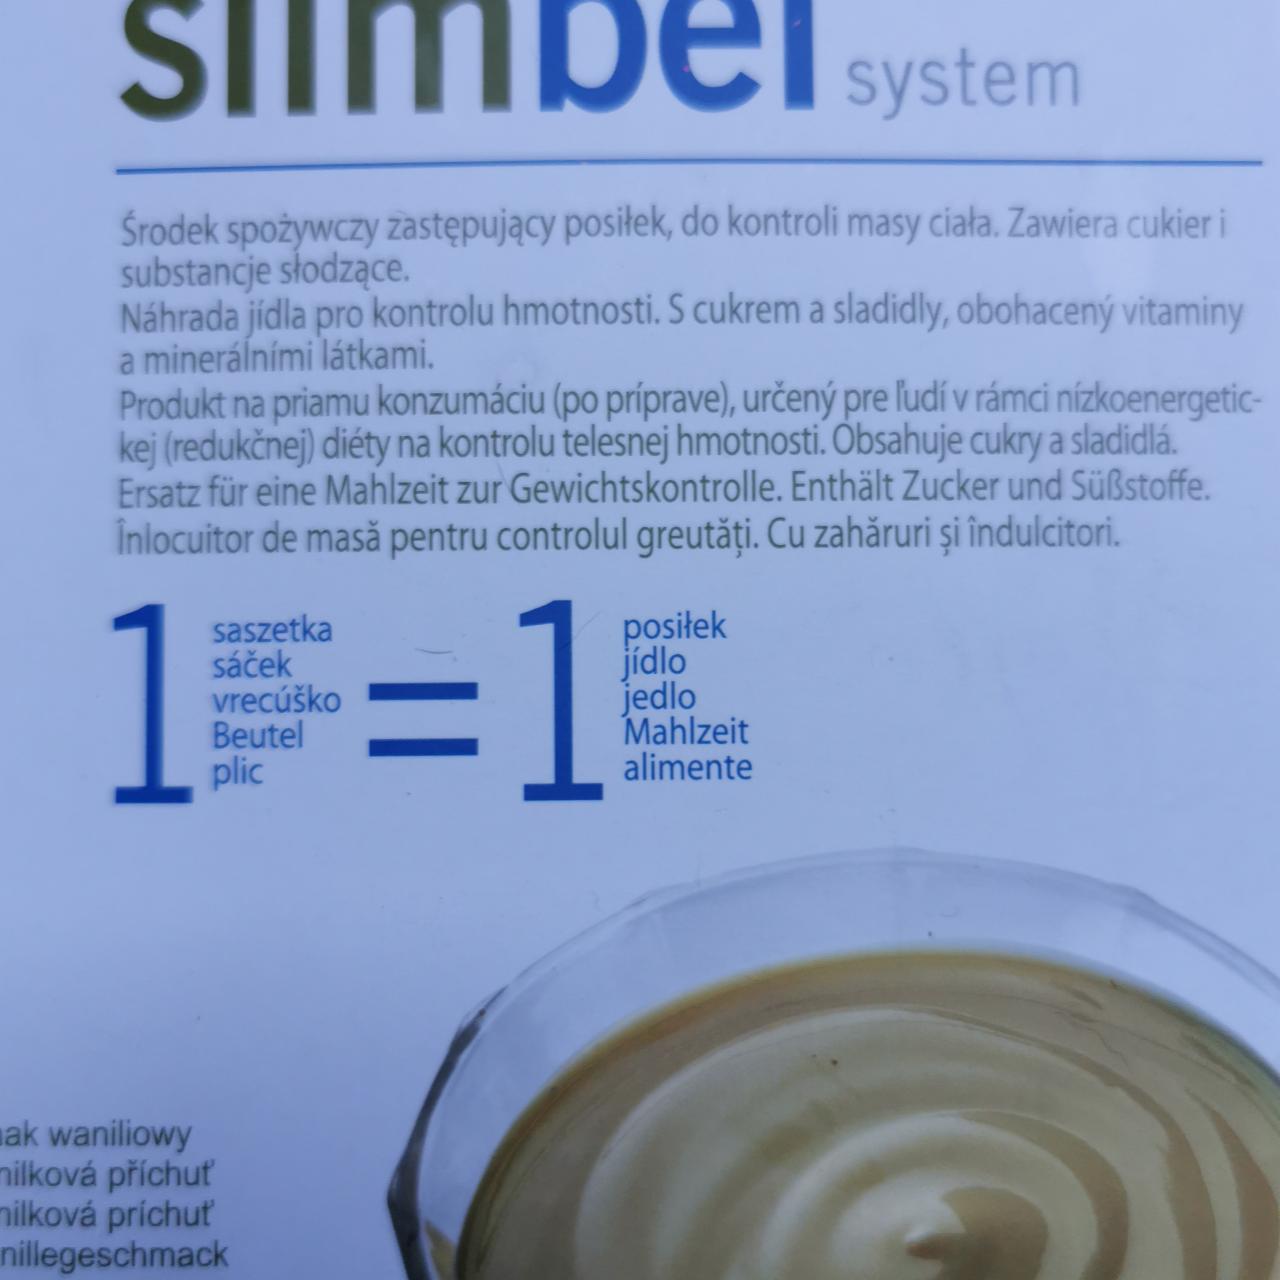 Fotografie - Slimbel system 2